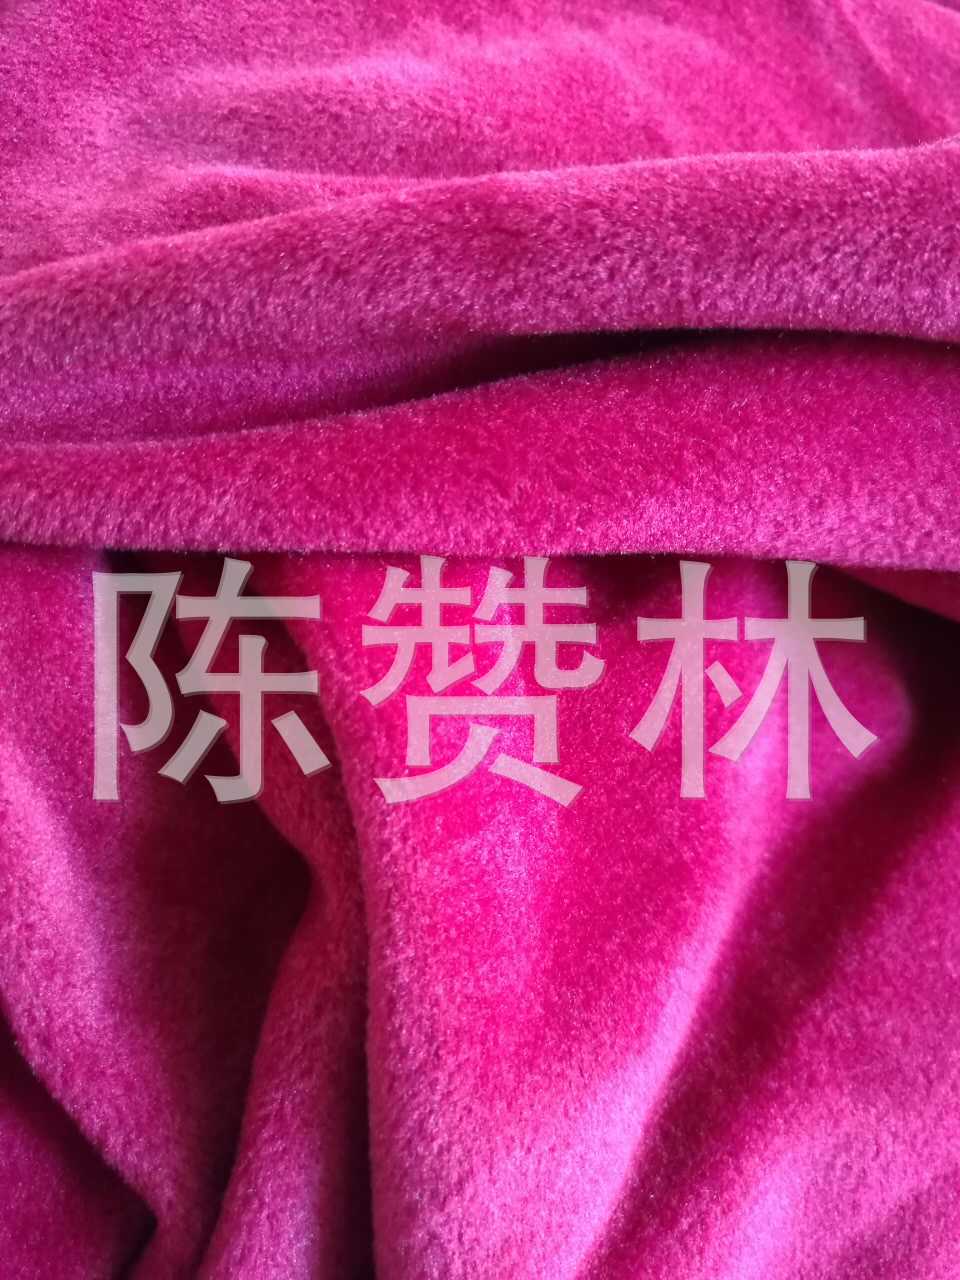 厂家定制全涤仿超枣红超柔幅度 180cm柔软服装面料布料示例图34